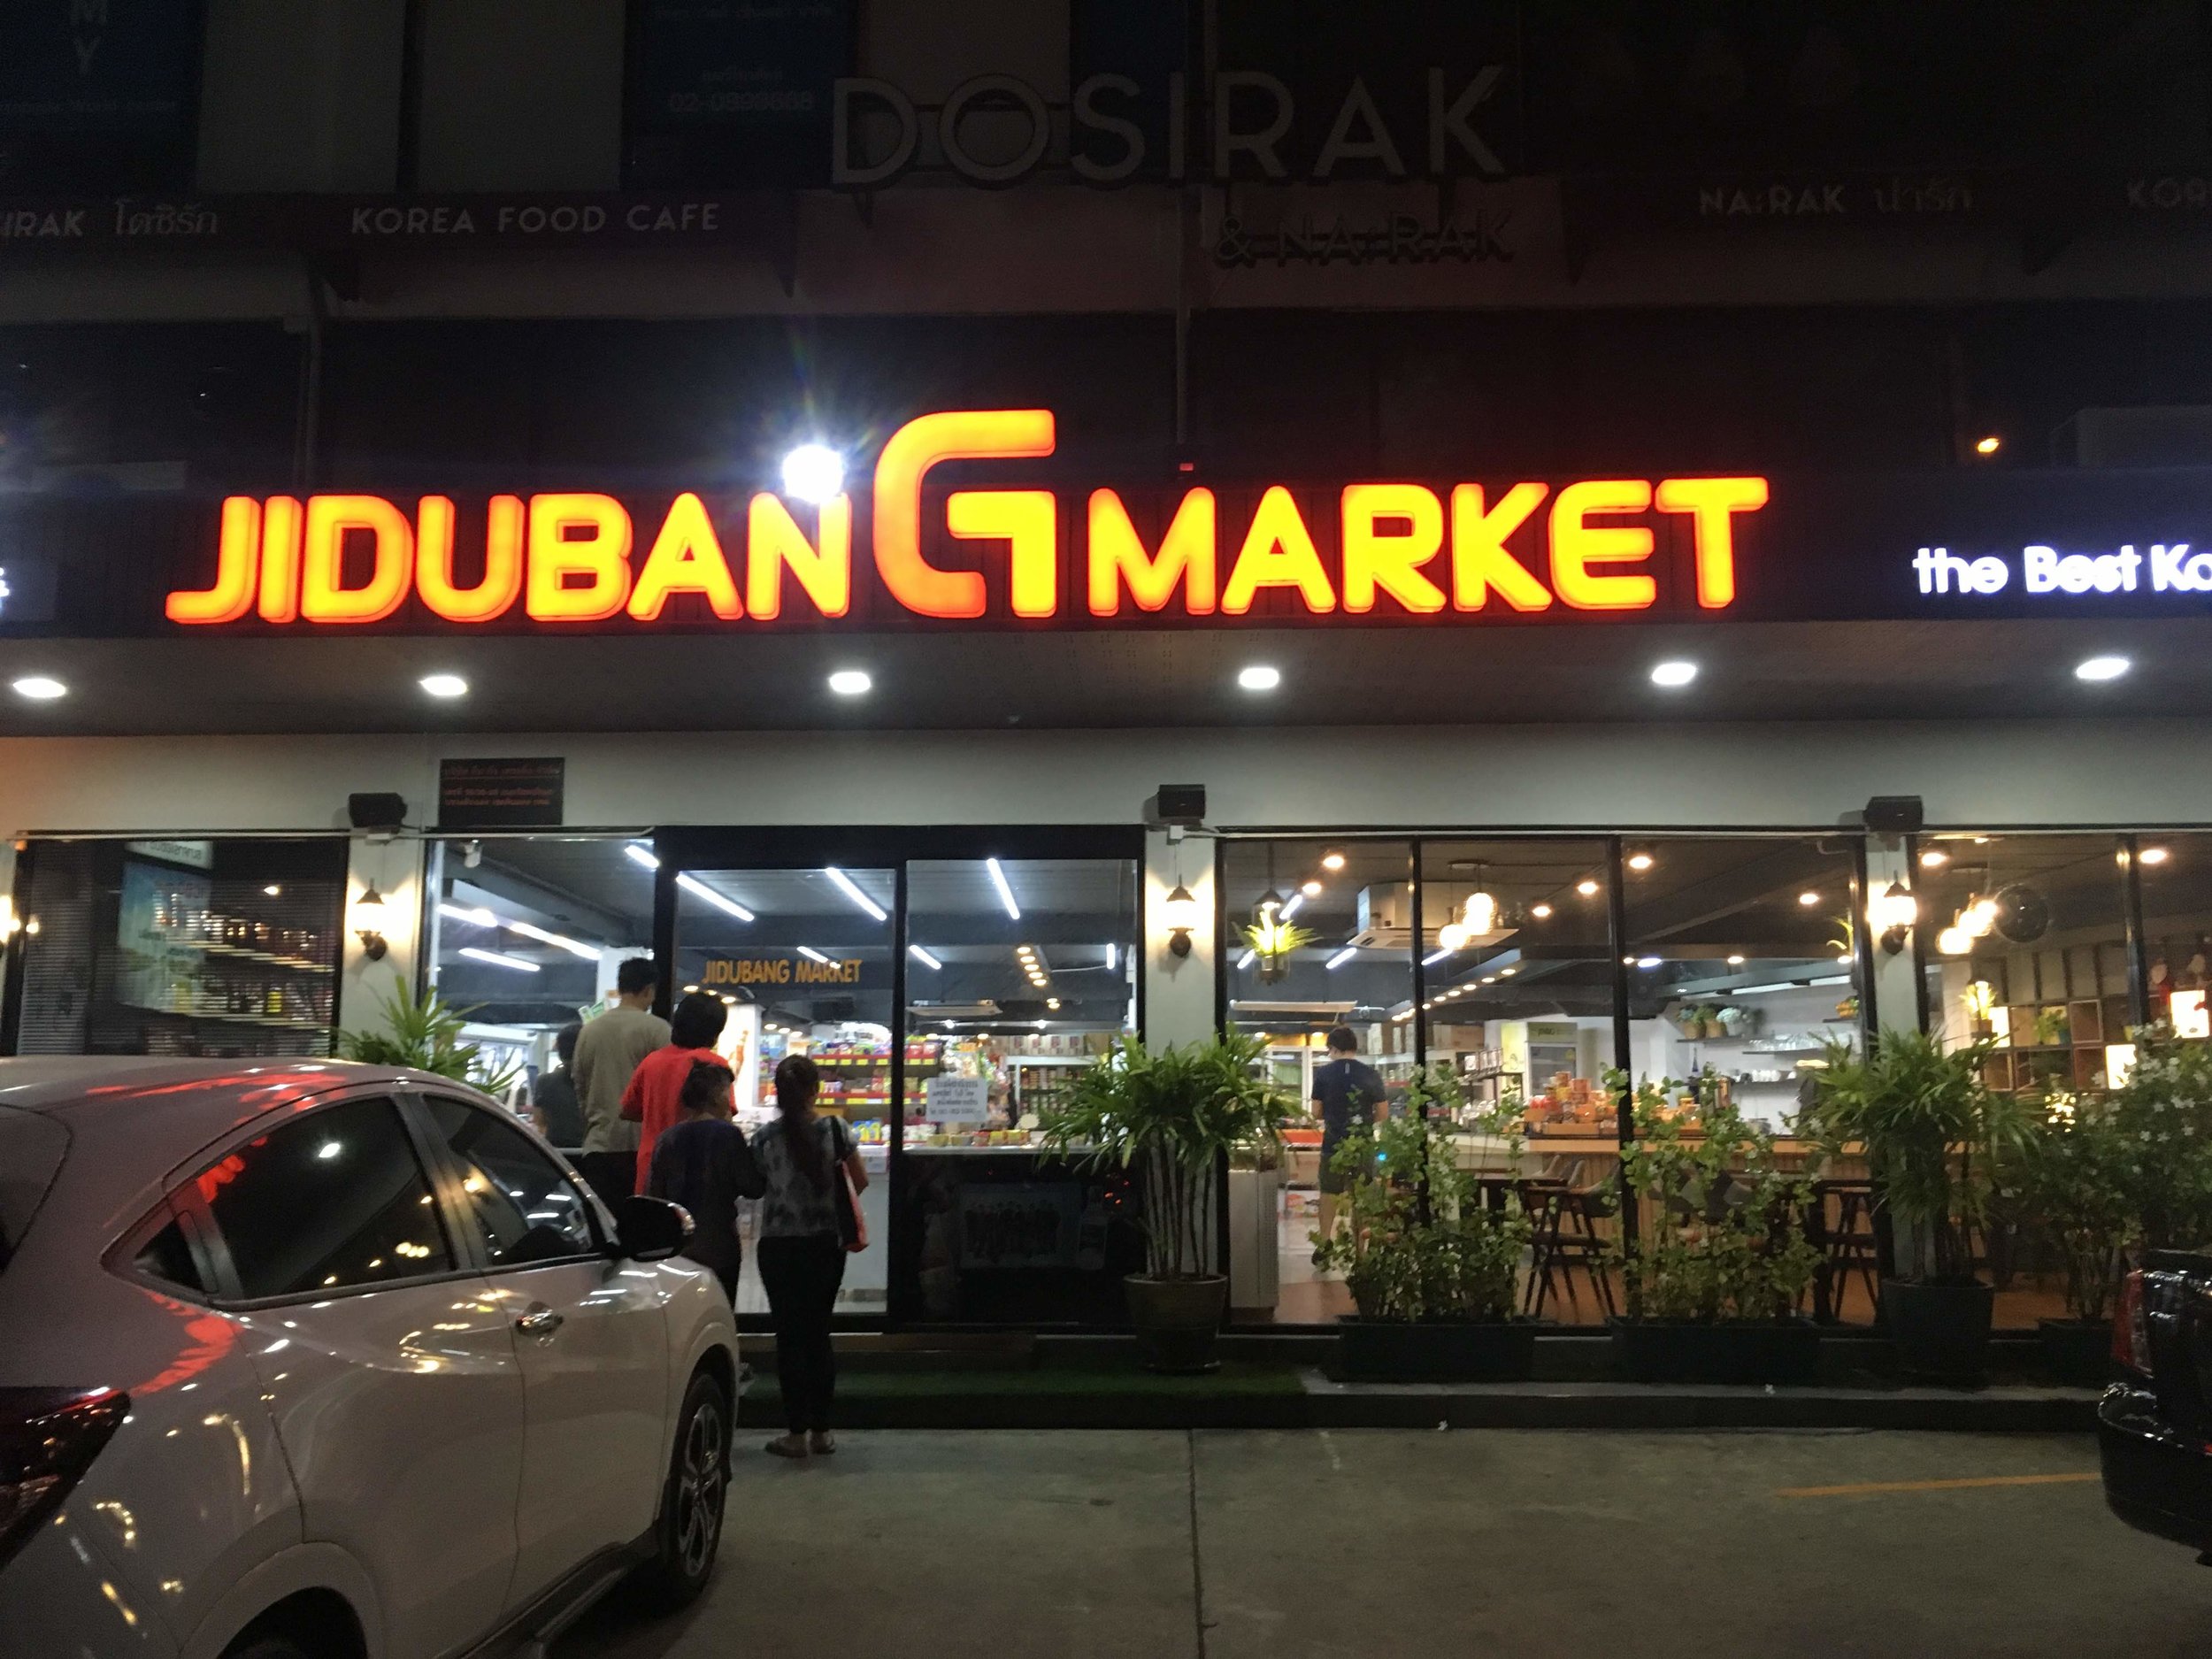 JidubanG Market, Bangkok - cool Korean supermarket near ...